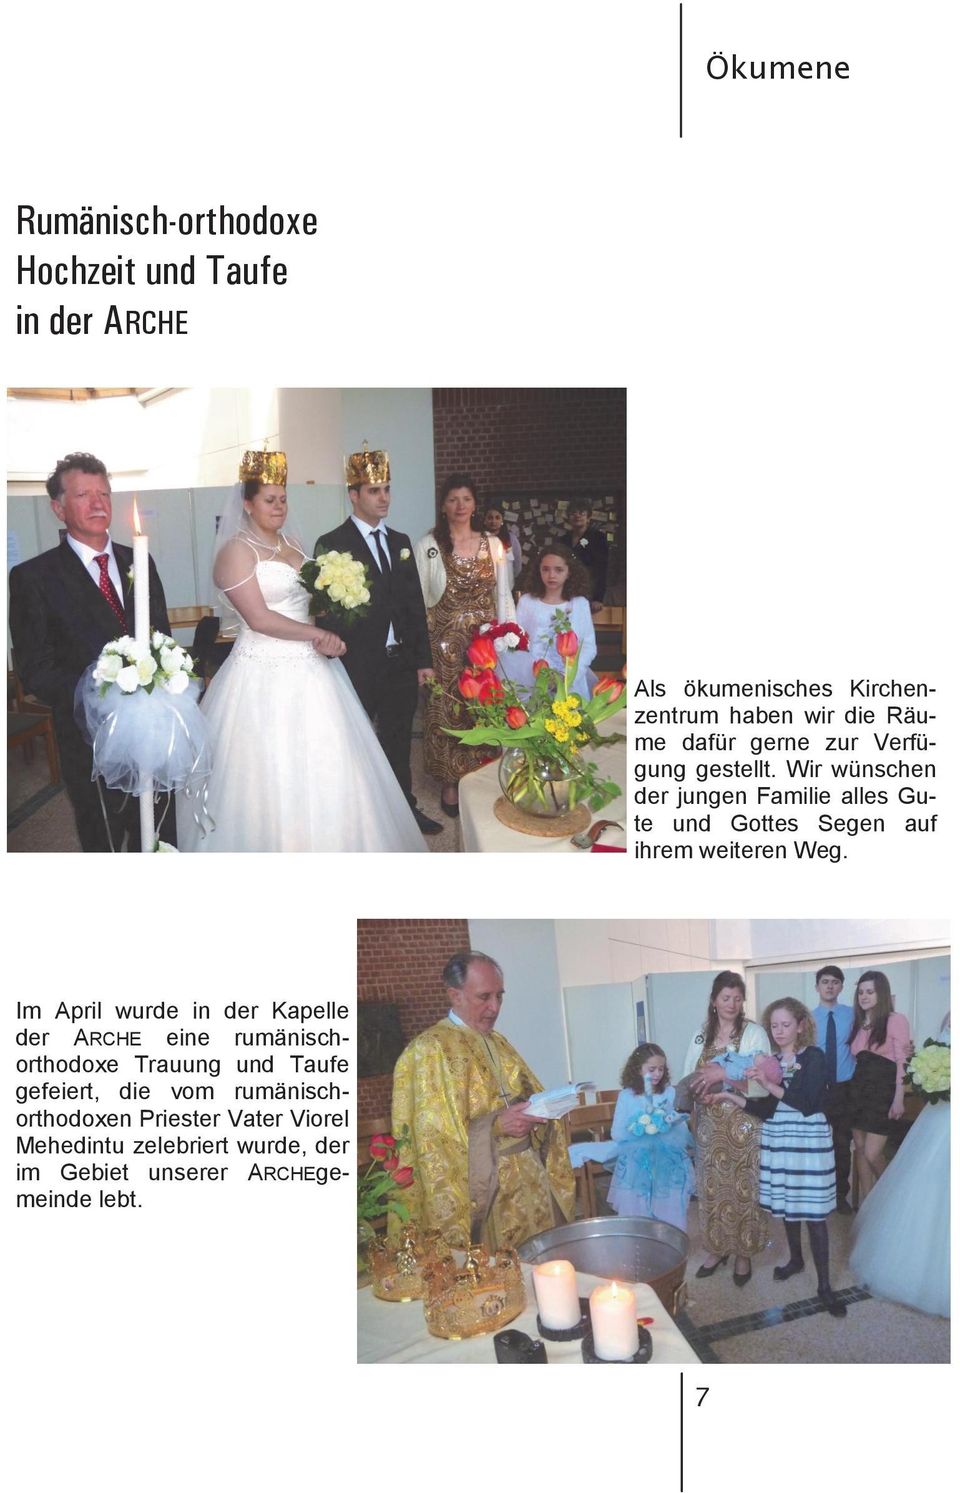 Zur alles hochzeit rumänisch gute Hochzeit rumÃ¤nisch